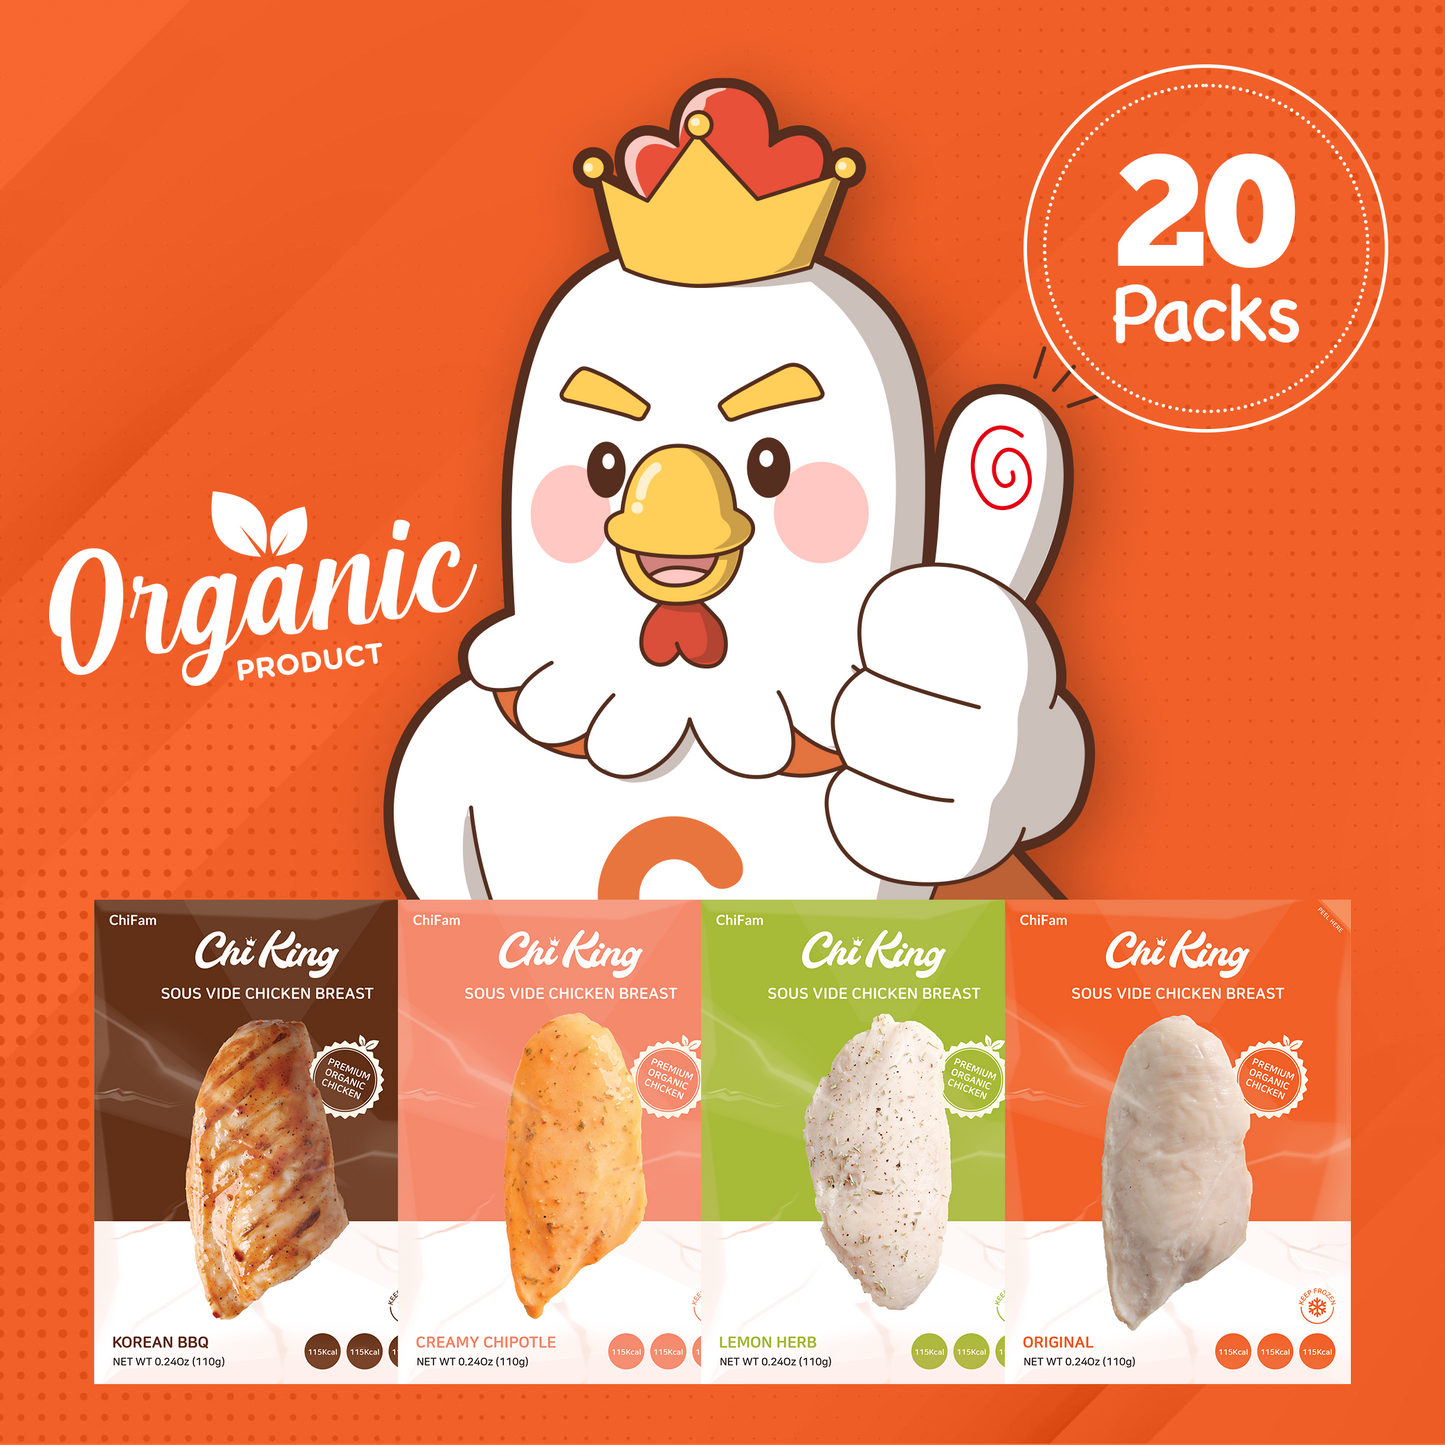 Organic 20 Pack Box